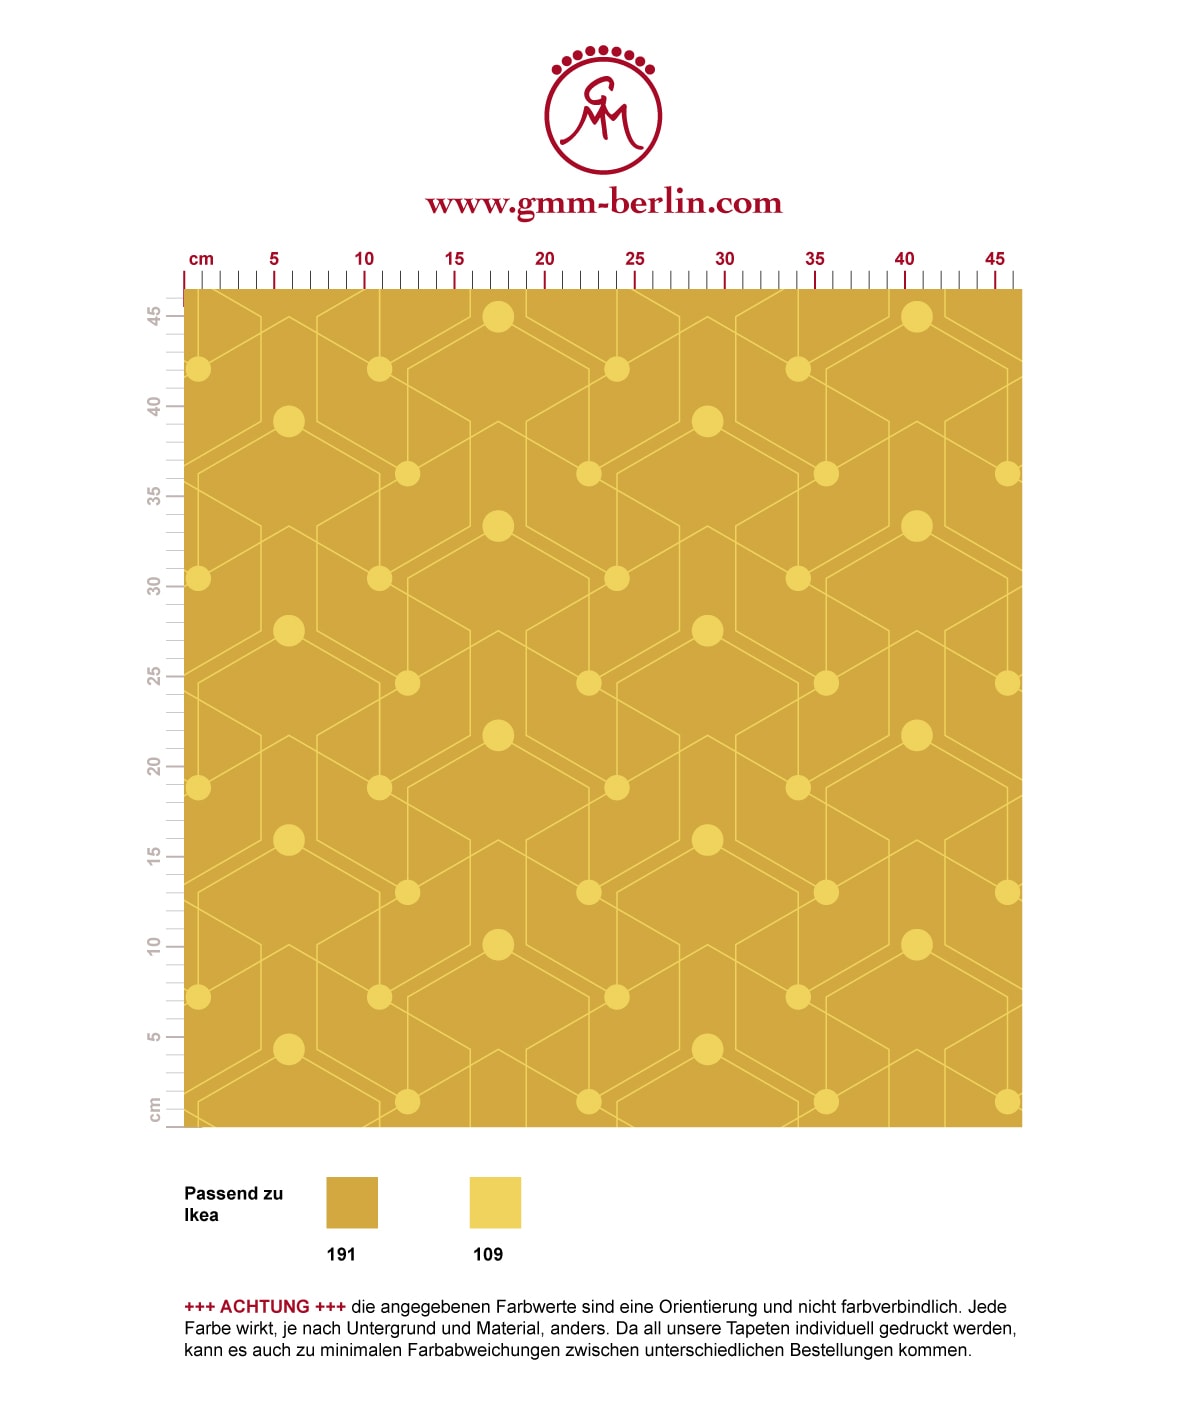 Auffallende grafische Tapete "Celestial Dots" kleines Muster in gelb angepasst an Ikea Wandfarben. Aus dem GMM-BERLIN.com Sortiment: Schöne Tapeten in der Farbe: gelb